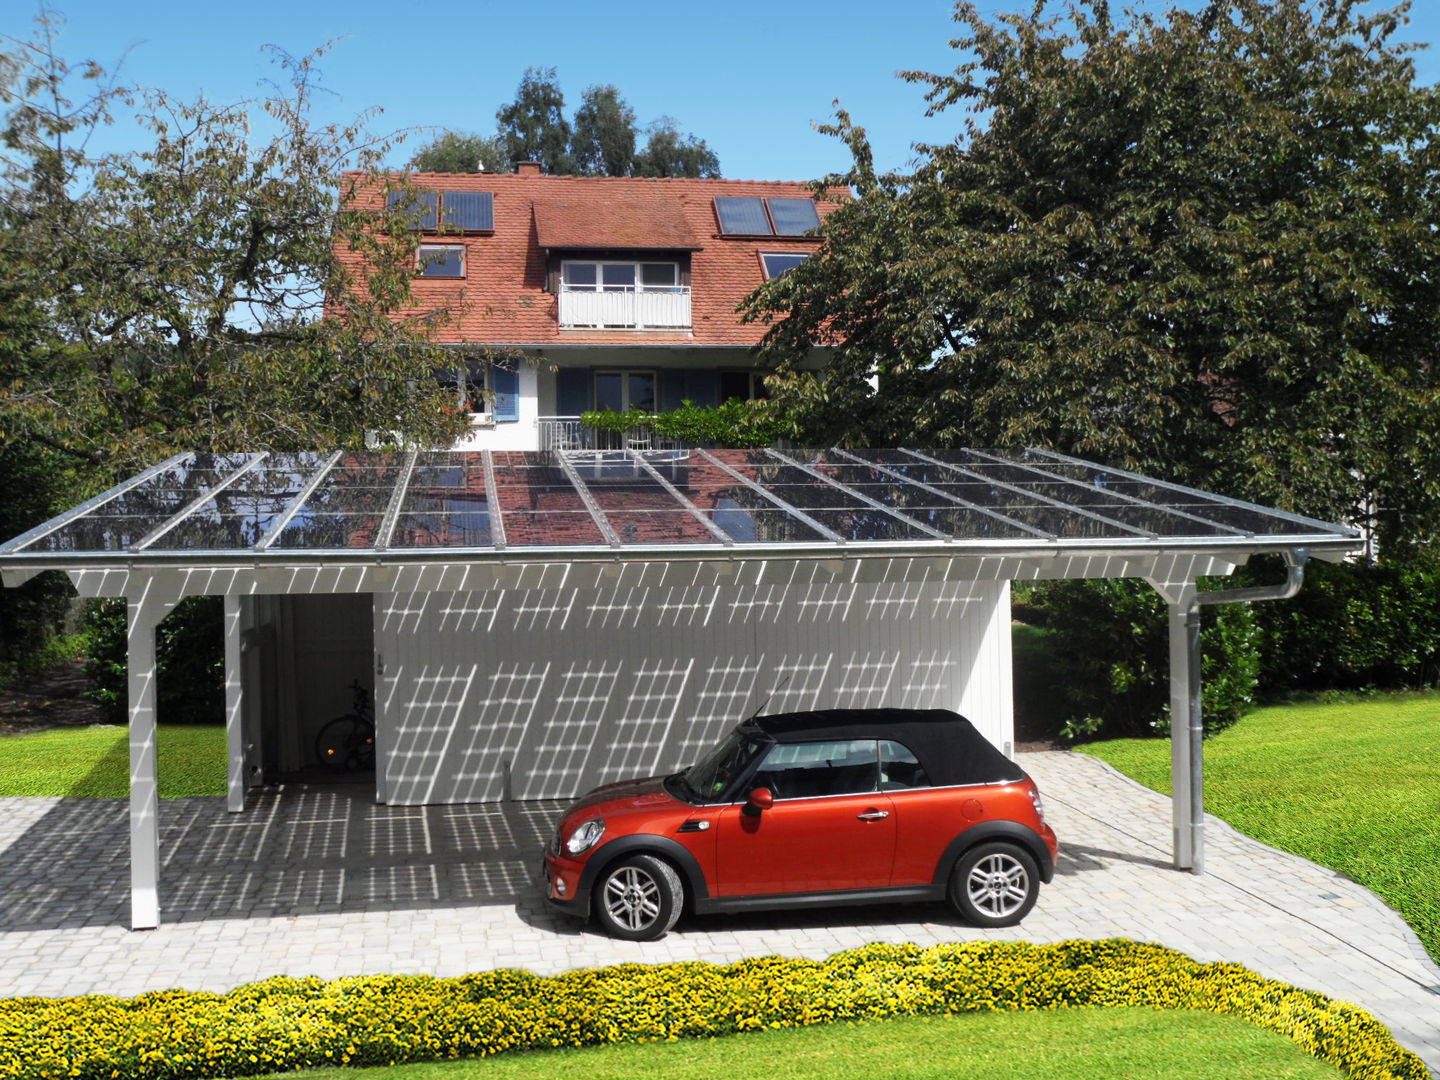 Solar-Glas-Carport, Solarterrassen & Carportwerk GmbH Solarterrassen & Carportwerk GmbH Modern Garaj / Hangar Garaj & Kulübeler